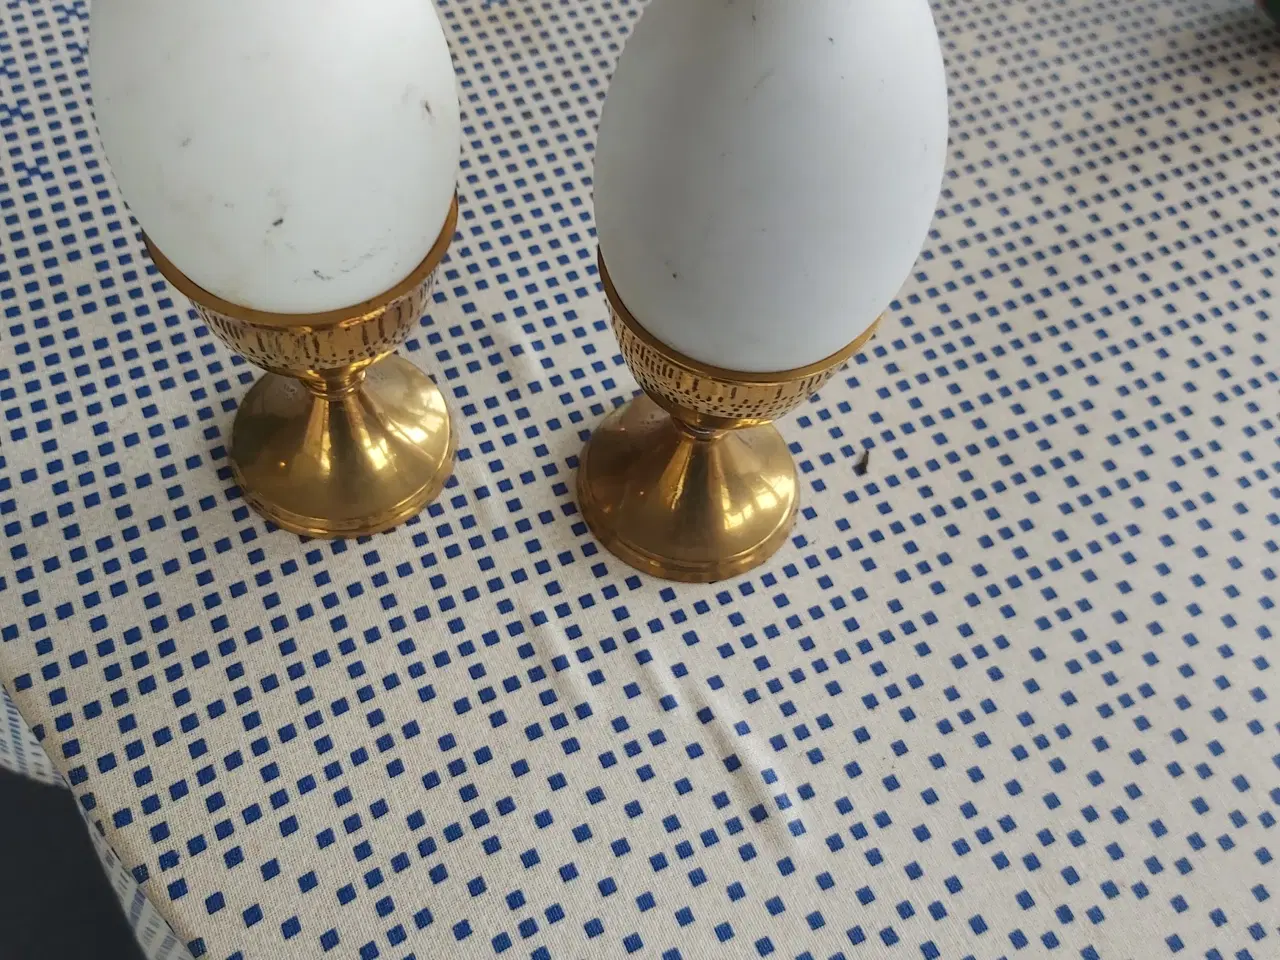 Billede 2 - 2 messing æggebægre med æg, ikke plstik